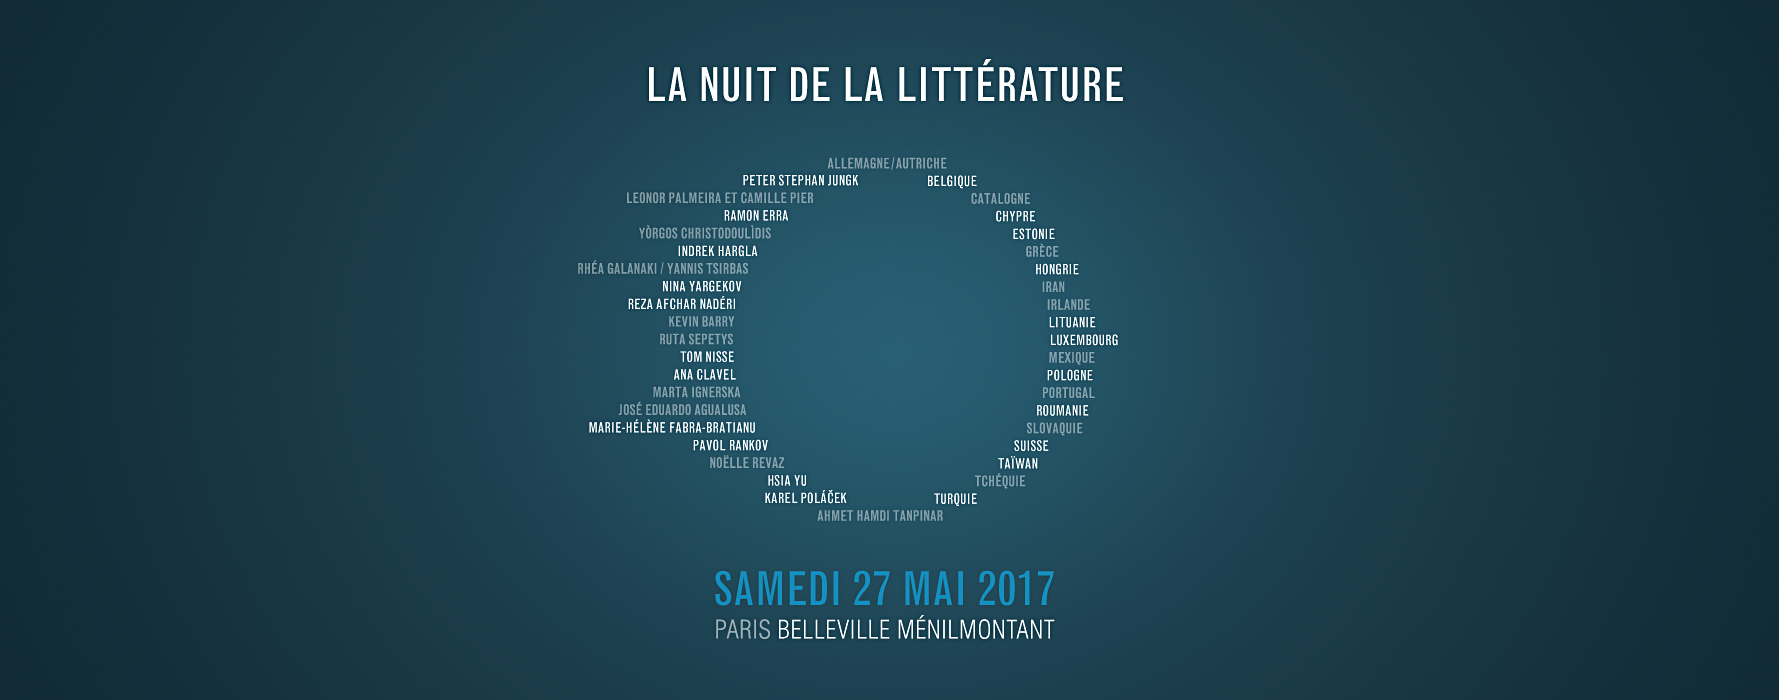 Nuit de la littérature 2017